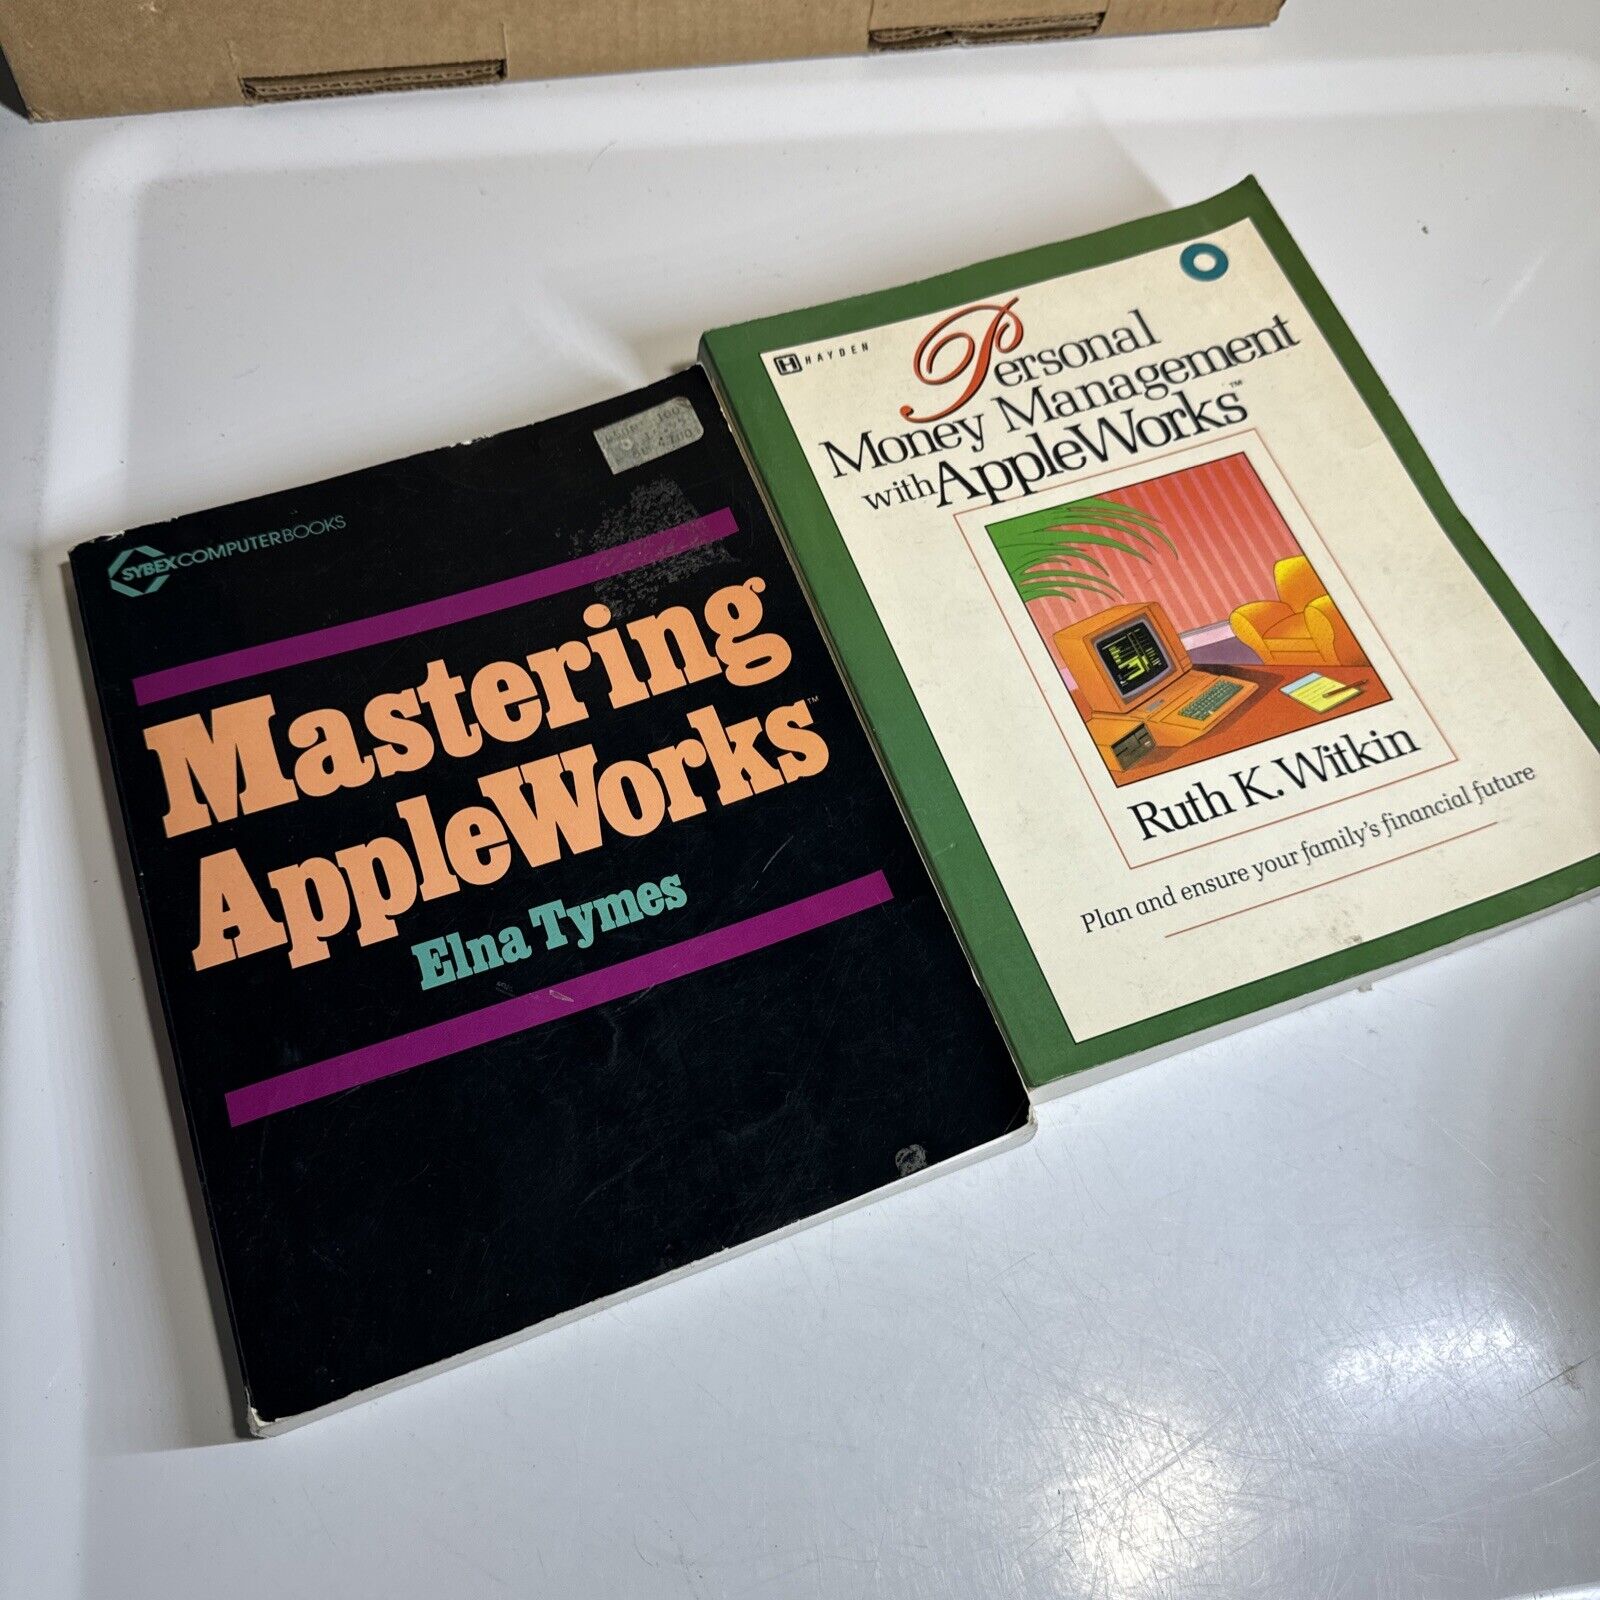 Lot 2 Books On Mastering AppleWorks For Apple II+ IIe